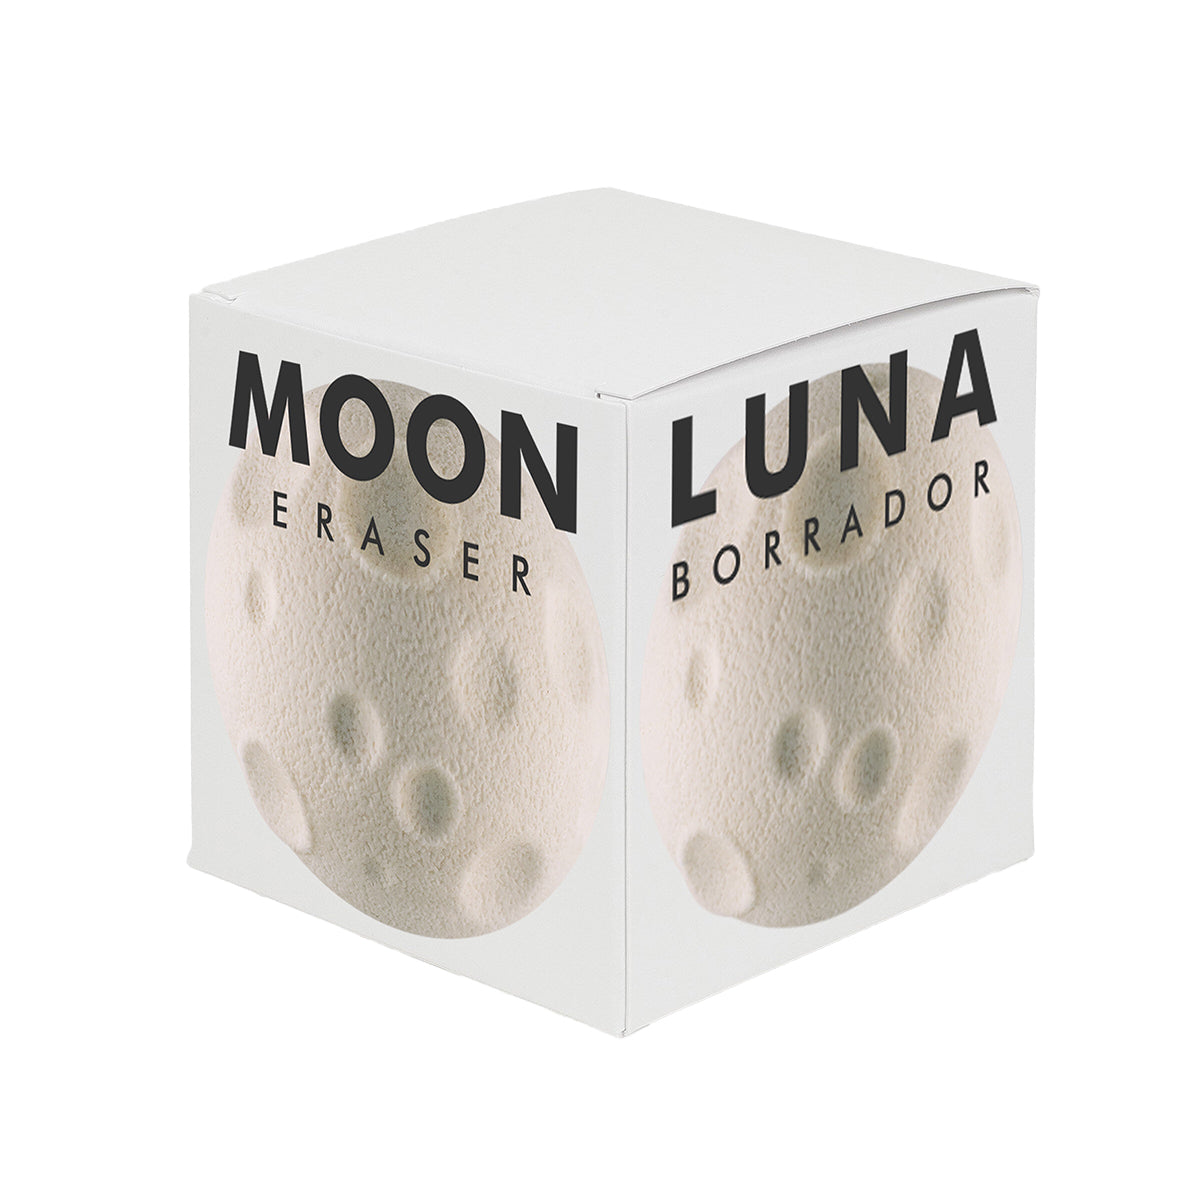 Moon Eraser